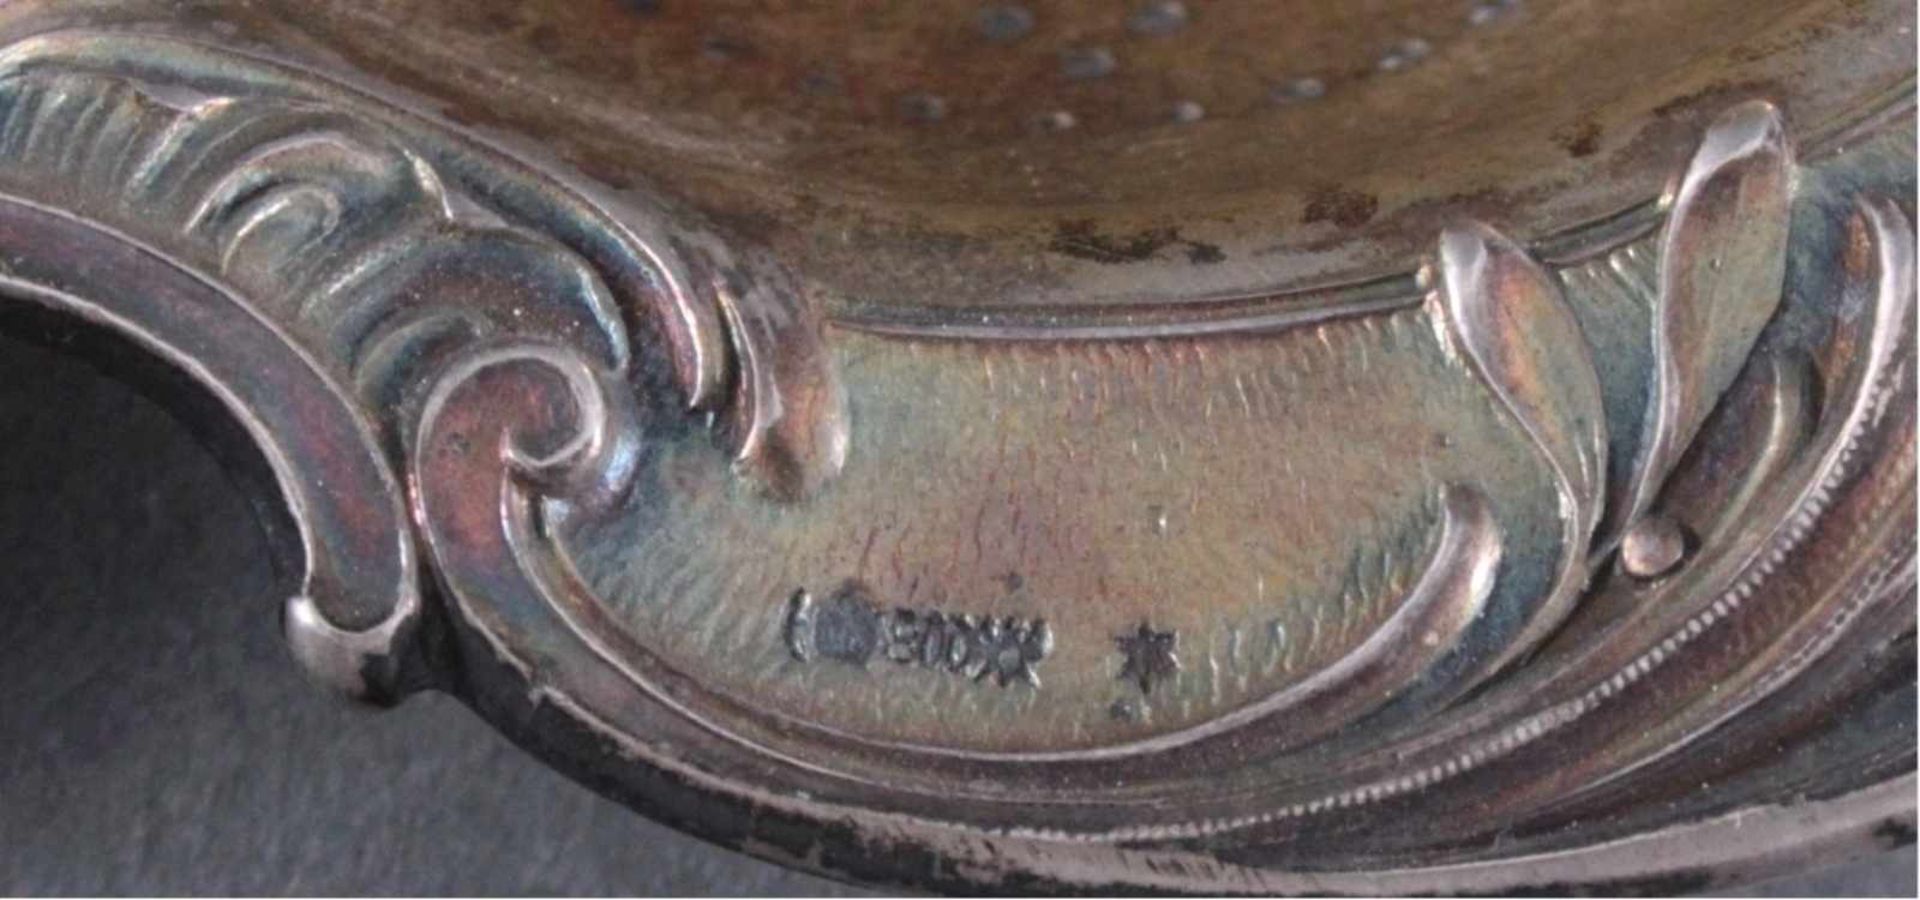 Silbernes Teesieb und Tee-EiReliefiertes Sieb, innen vergoldet, am Griff mit MonogrammCH, punziert - Bild 3 aus 4